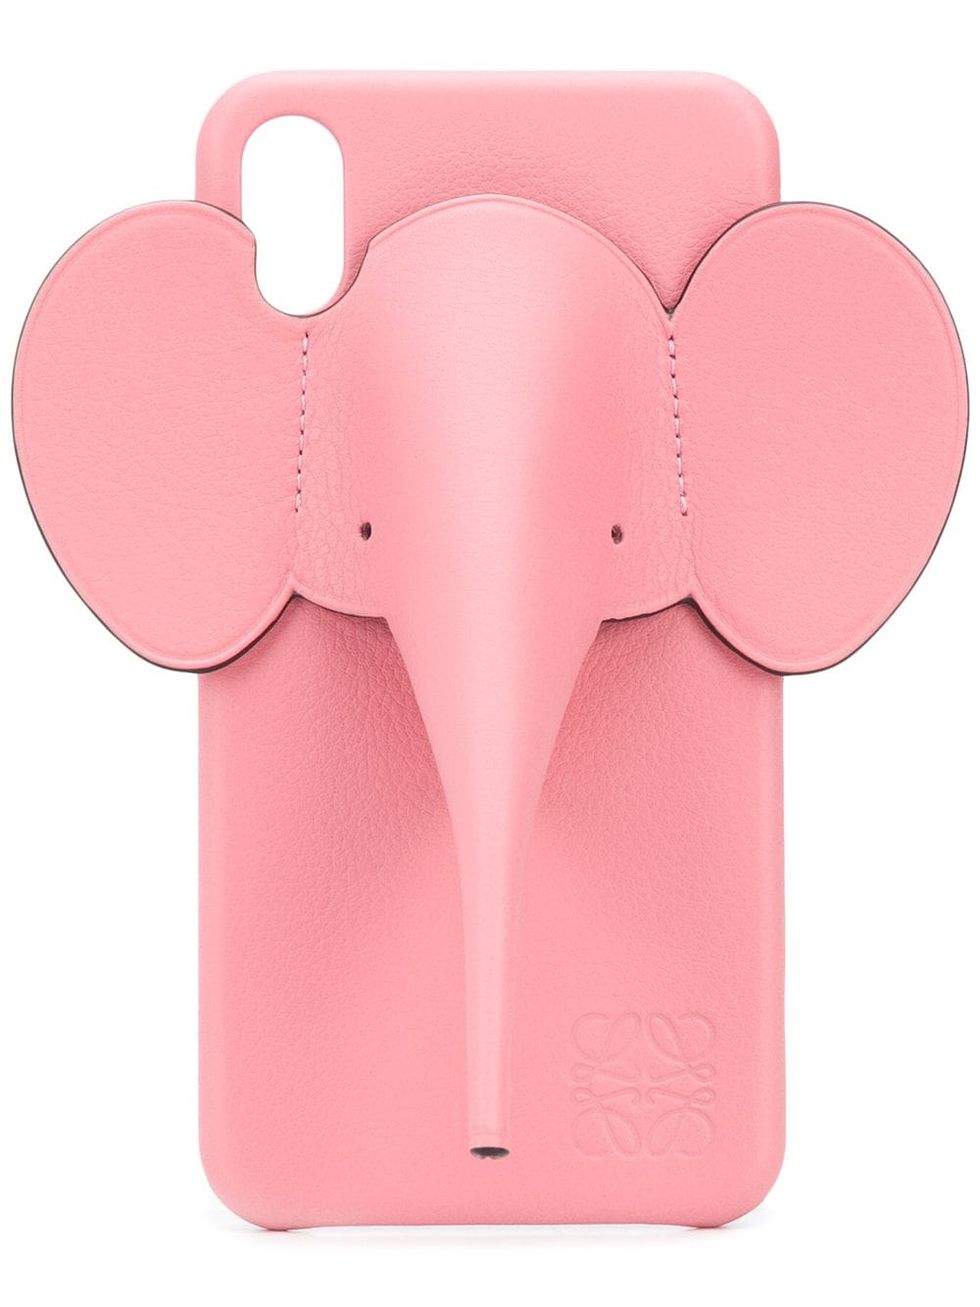 個性派禮物推薦：Loewe 大象造型iPhone XS Max手機殼